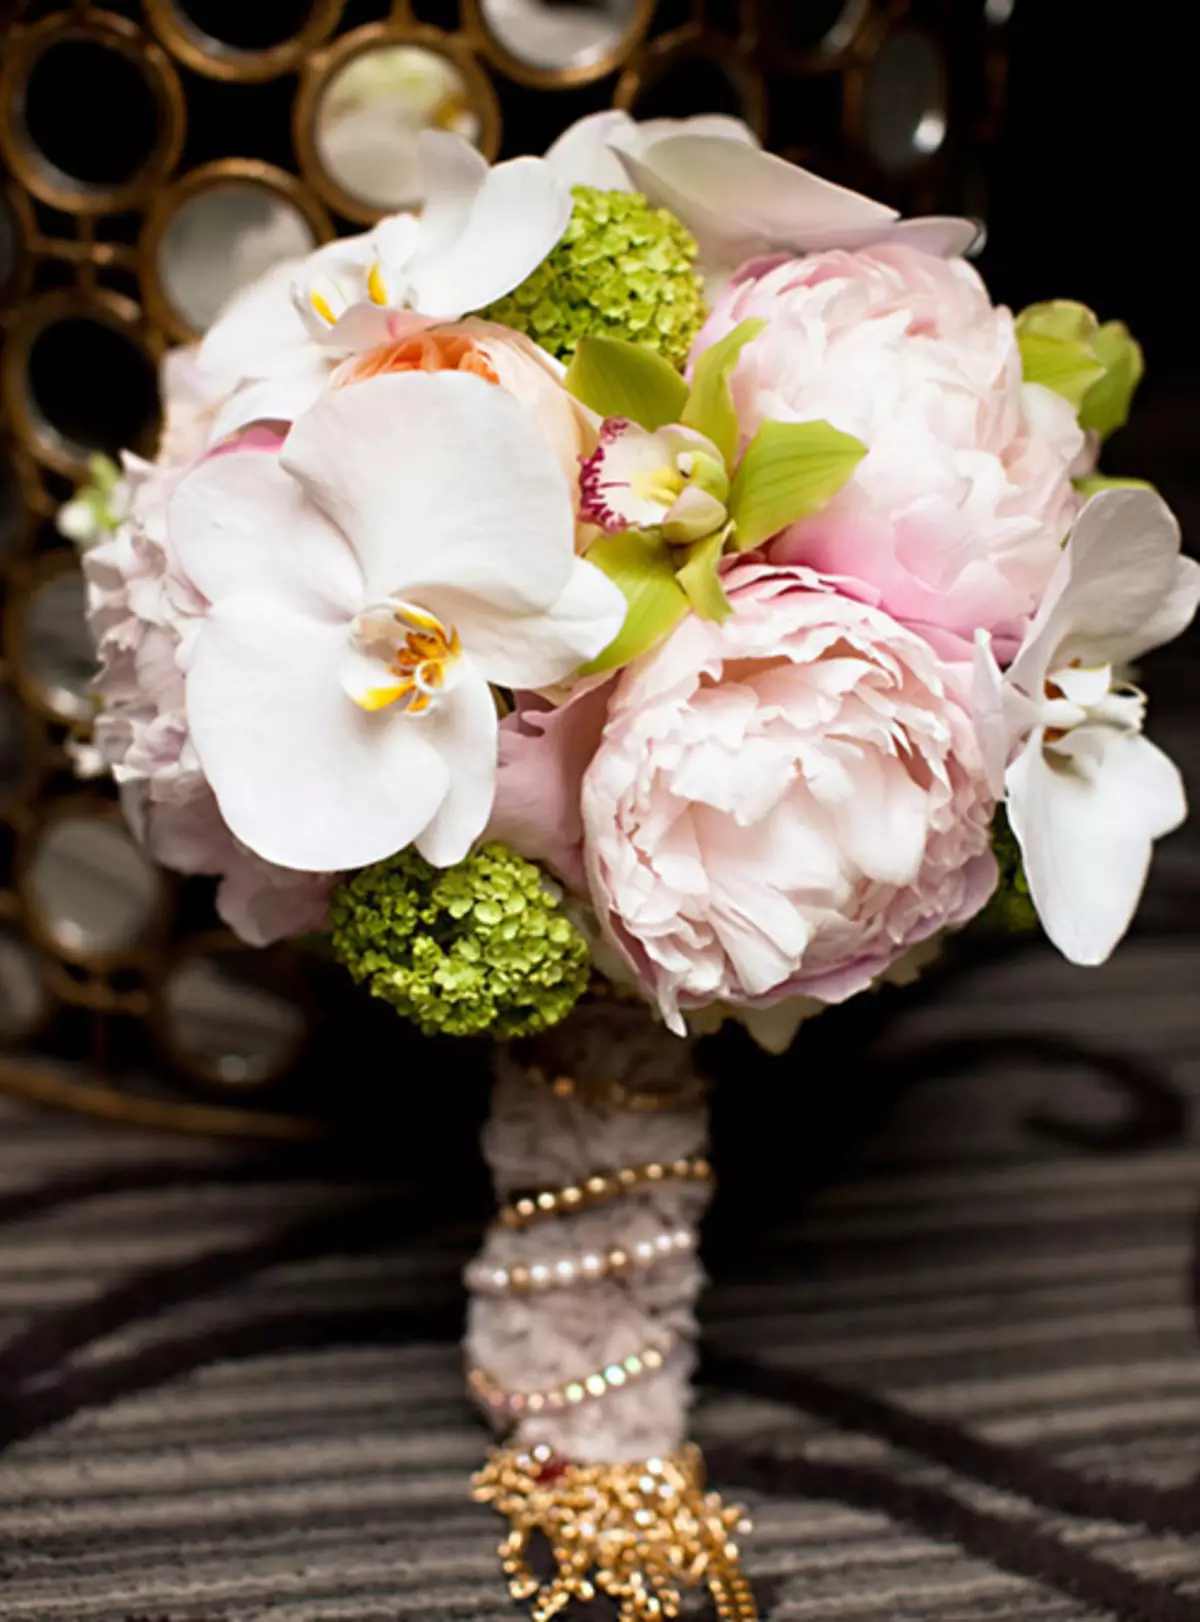 Vestuvių peonijų puokštė (108 nuotraukos): deriniai su baltais vandeniu ir raudonaisiais telefonu, bordo, alyvinės ir violetinės gėlės deriniai vestuvių puokštėje 8013_73